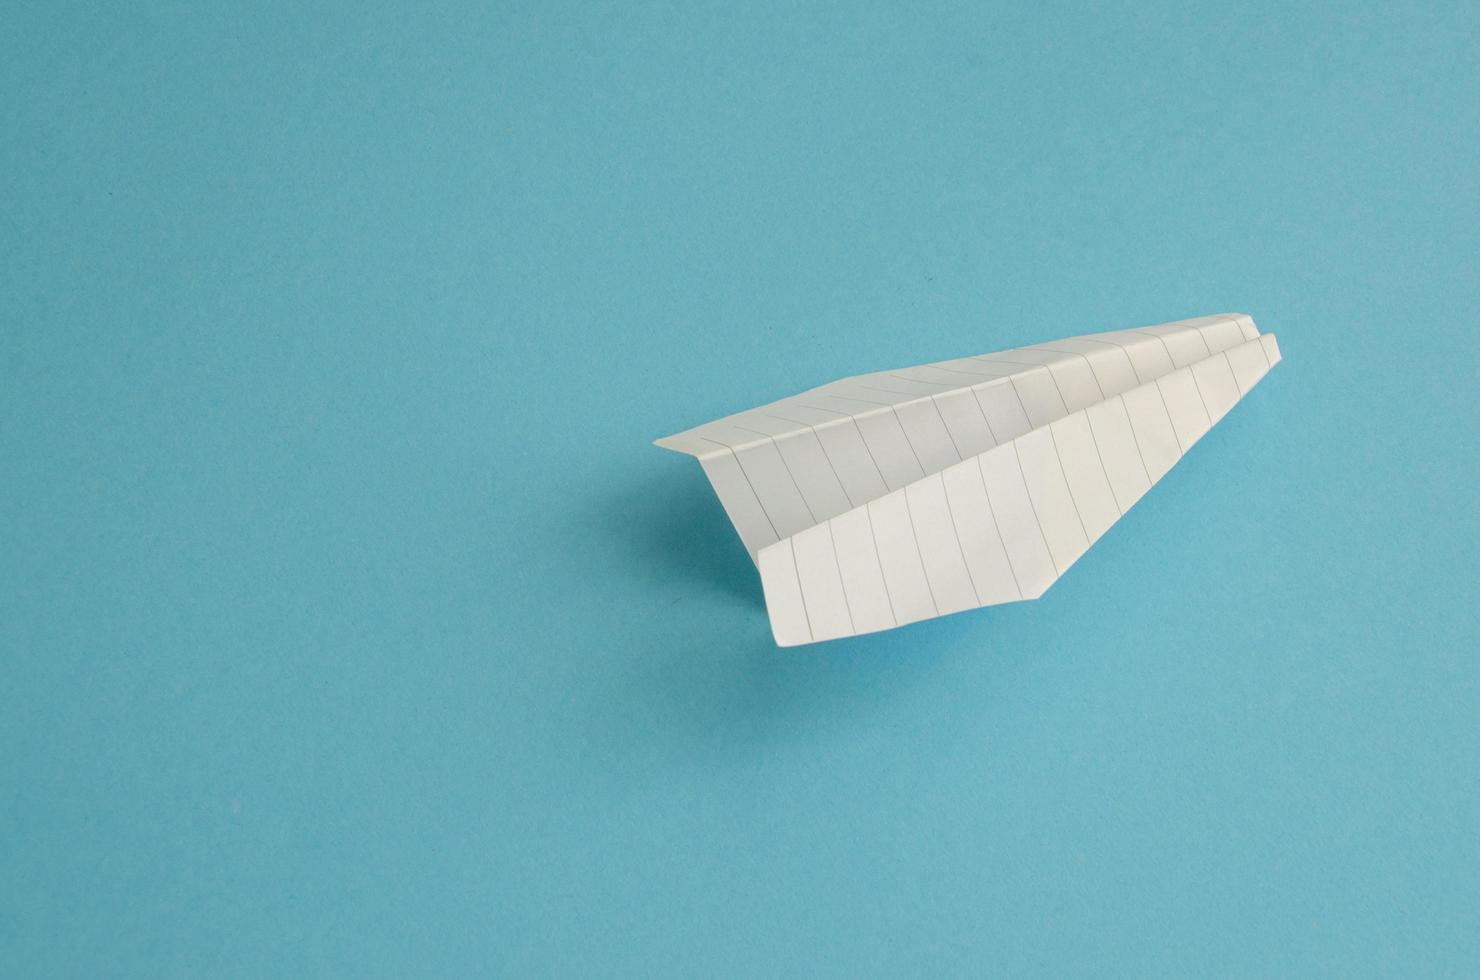 plan gjord av vitt papper på blå bakgrund, minimalism foto